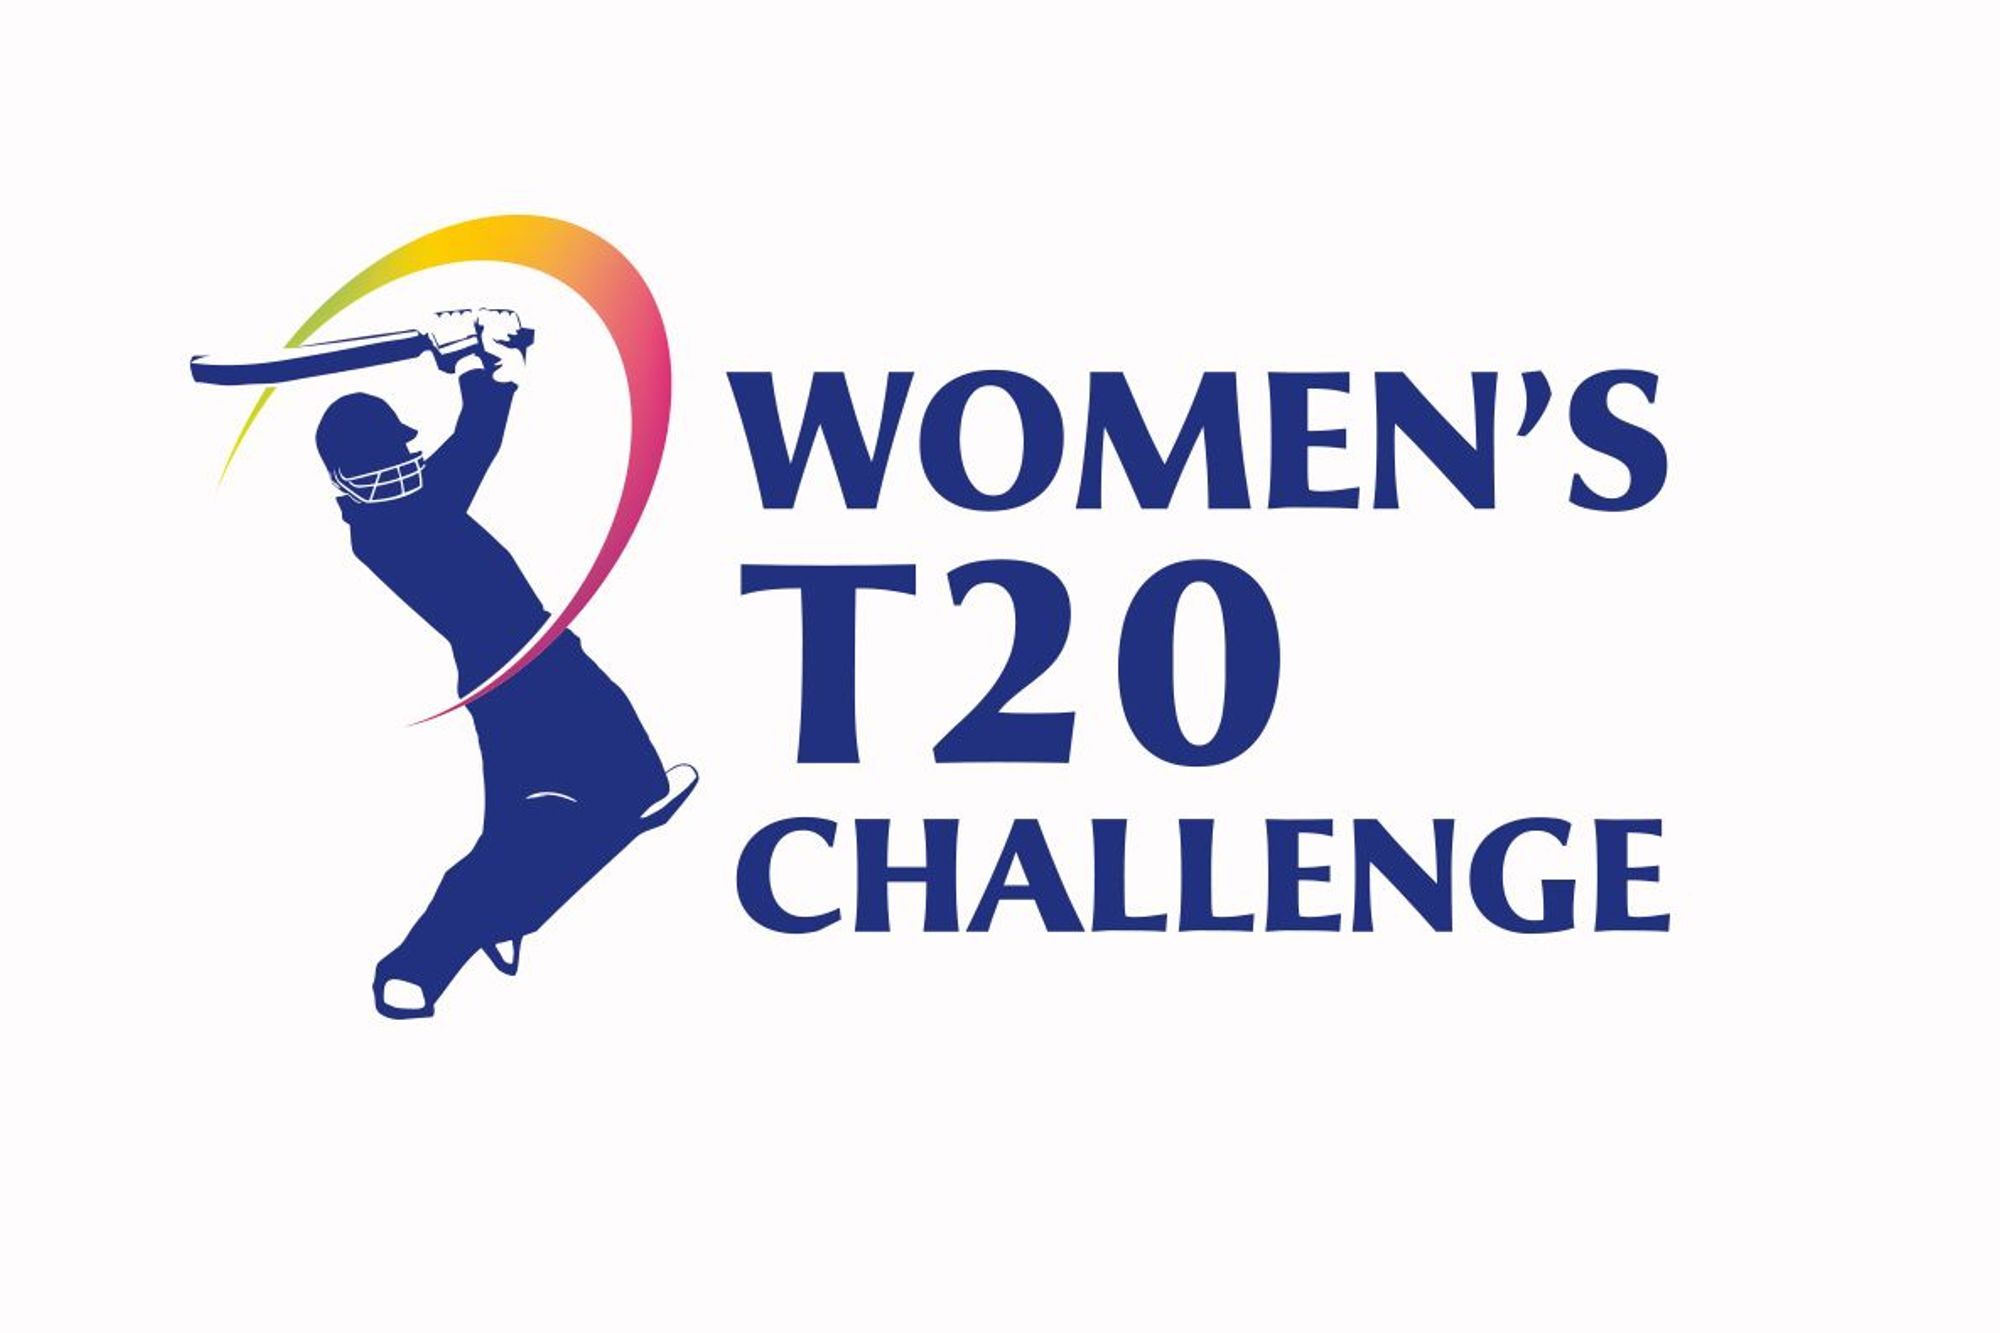 2018 के महिला टी20 चैलेंज के लिए मिताली राज एंड कंपनी को नहीं हुआ है भुगतान